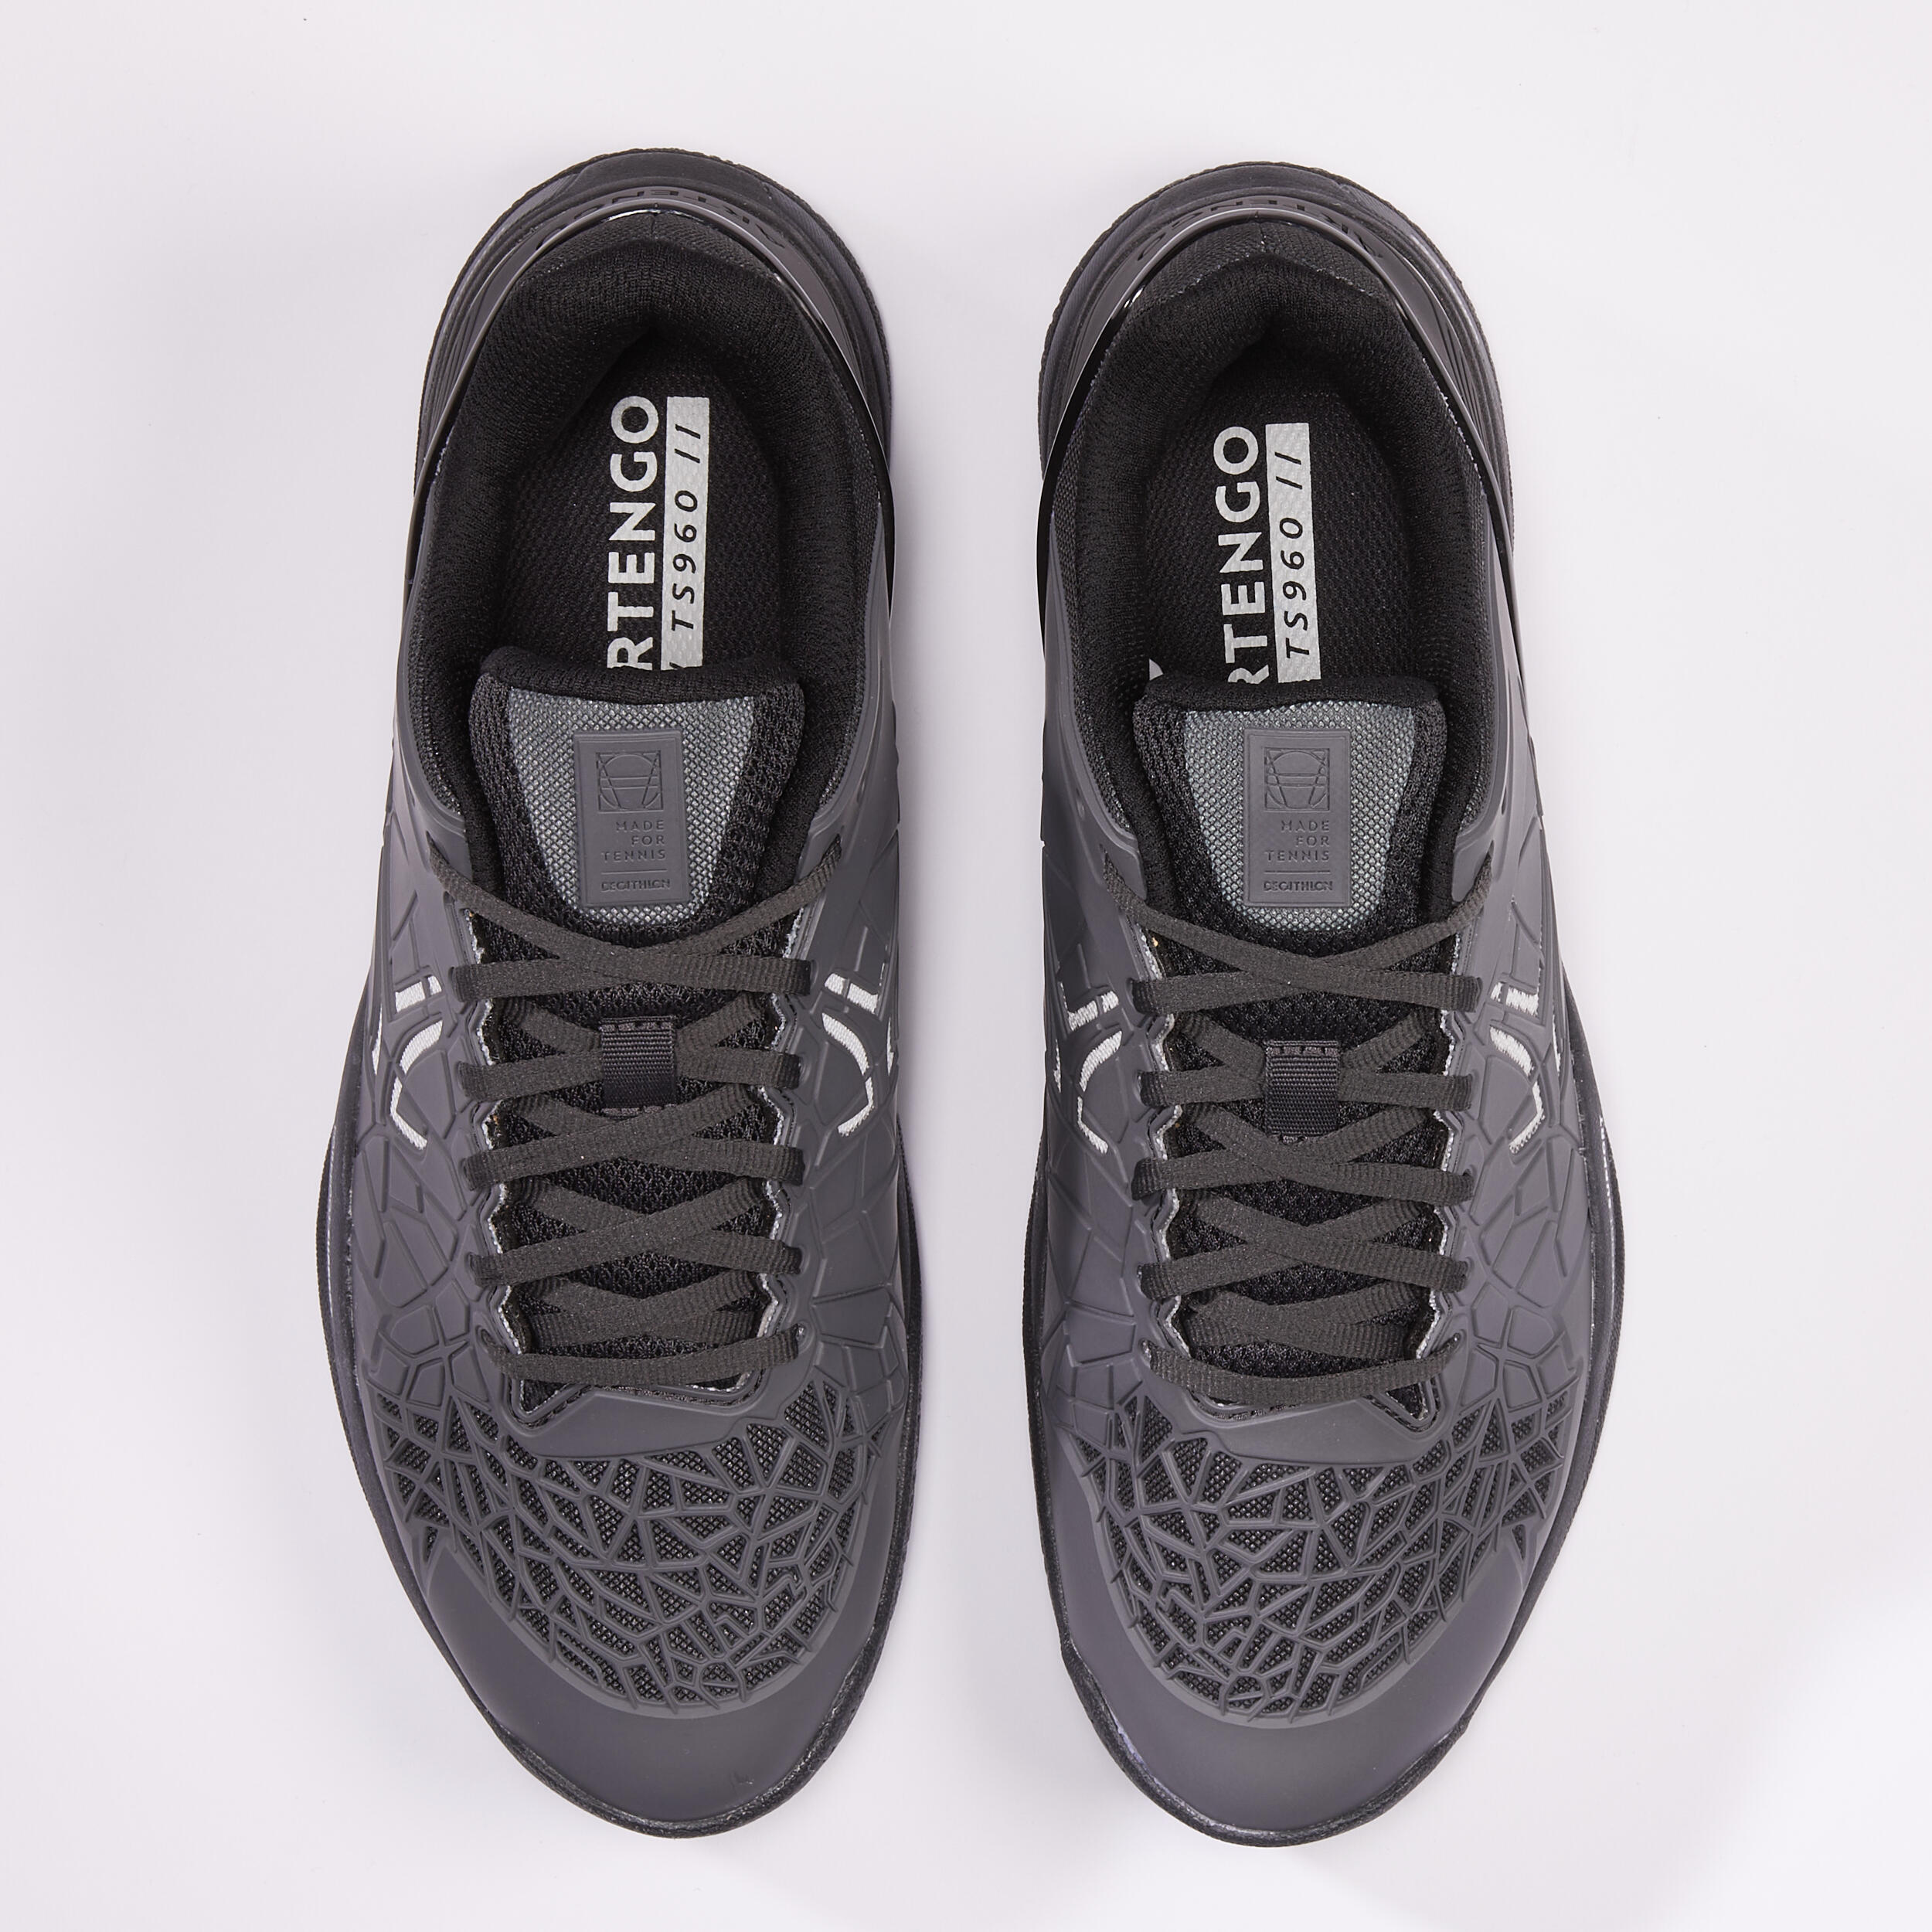 Men's Tennis Multicourt Shoes Strong Pro - Grey/Black 8/8